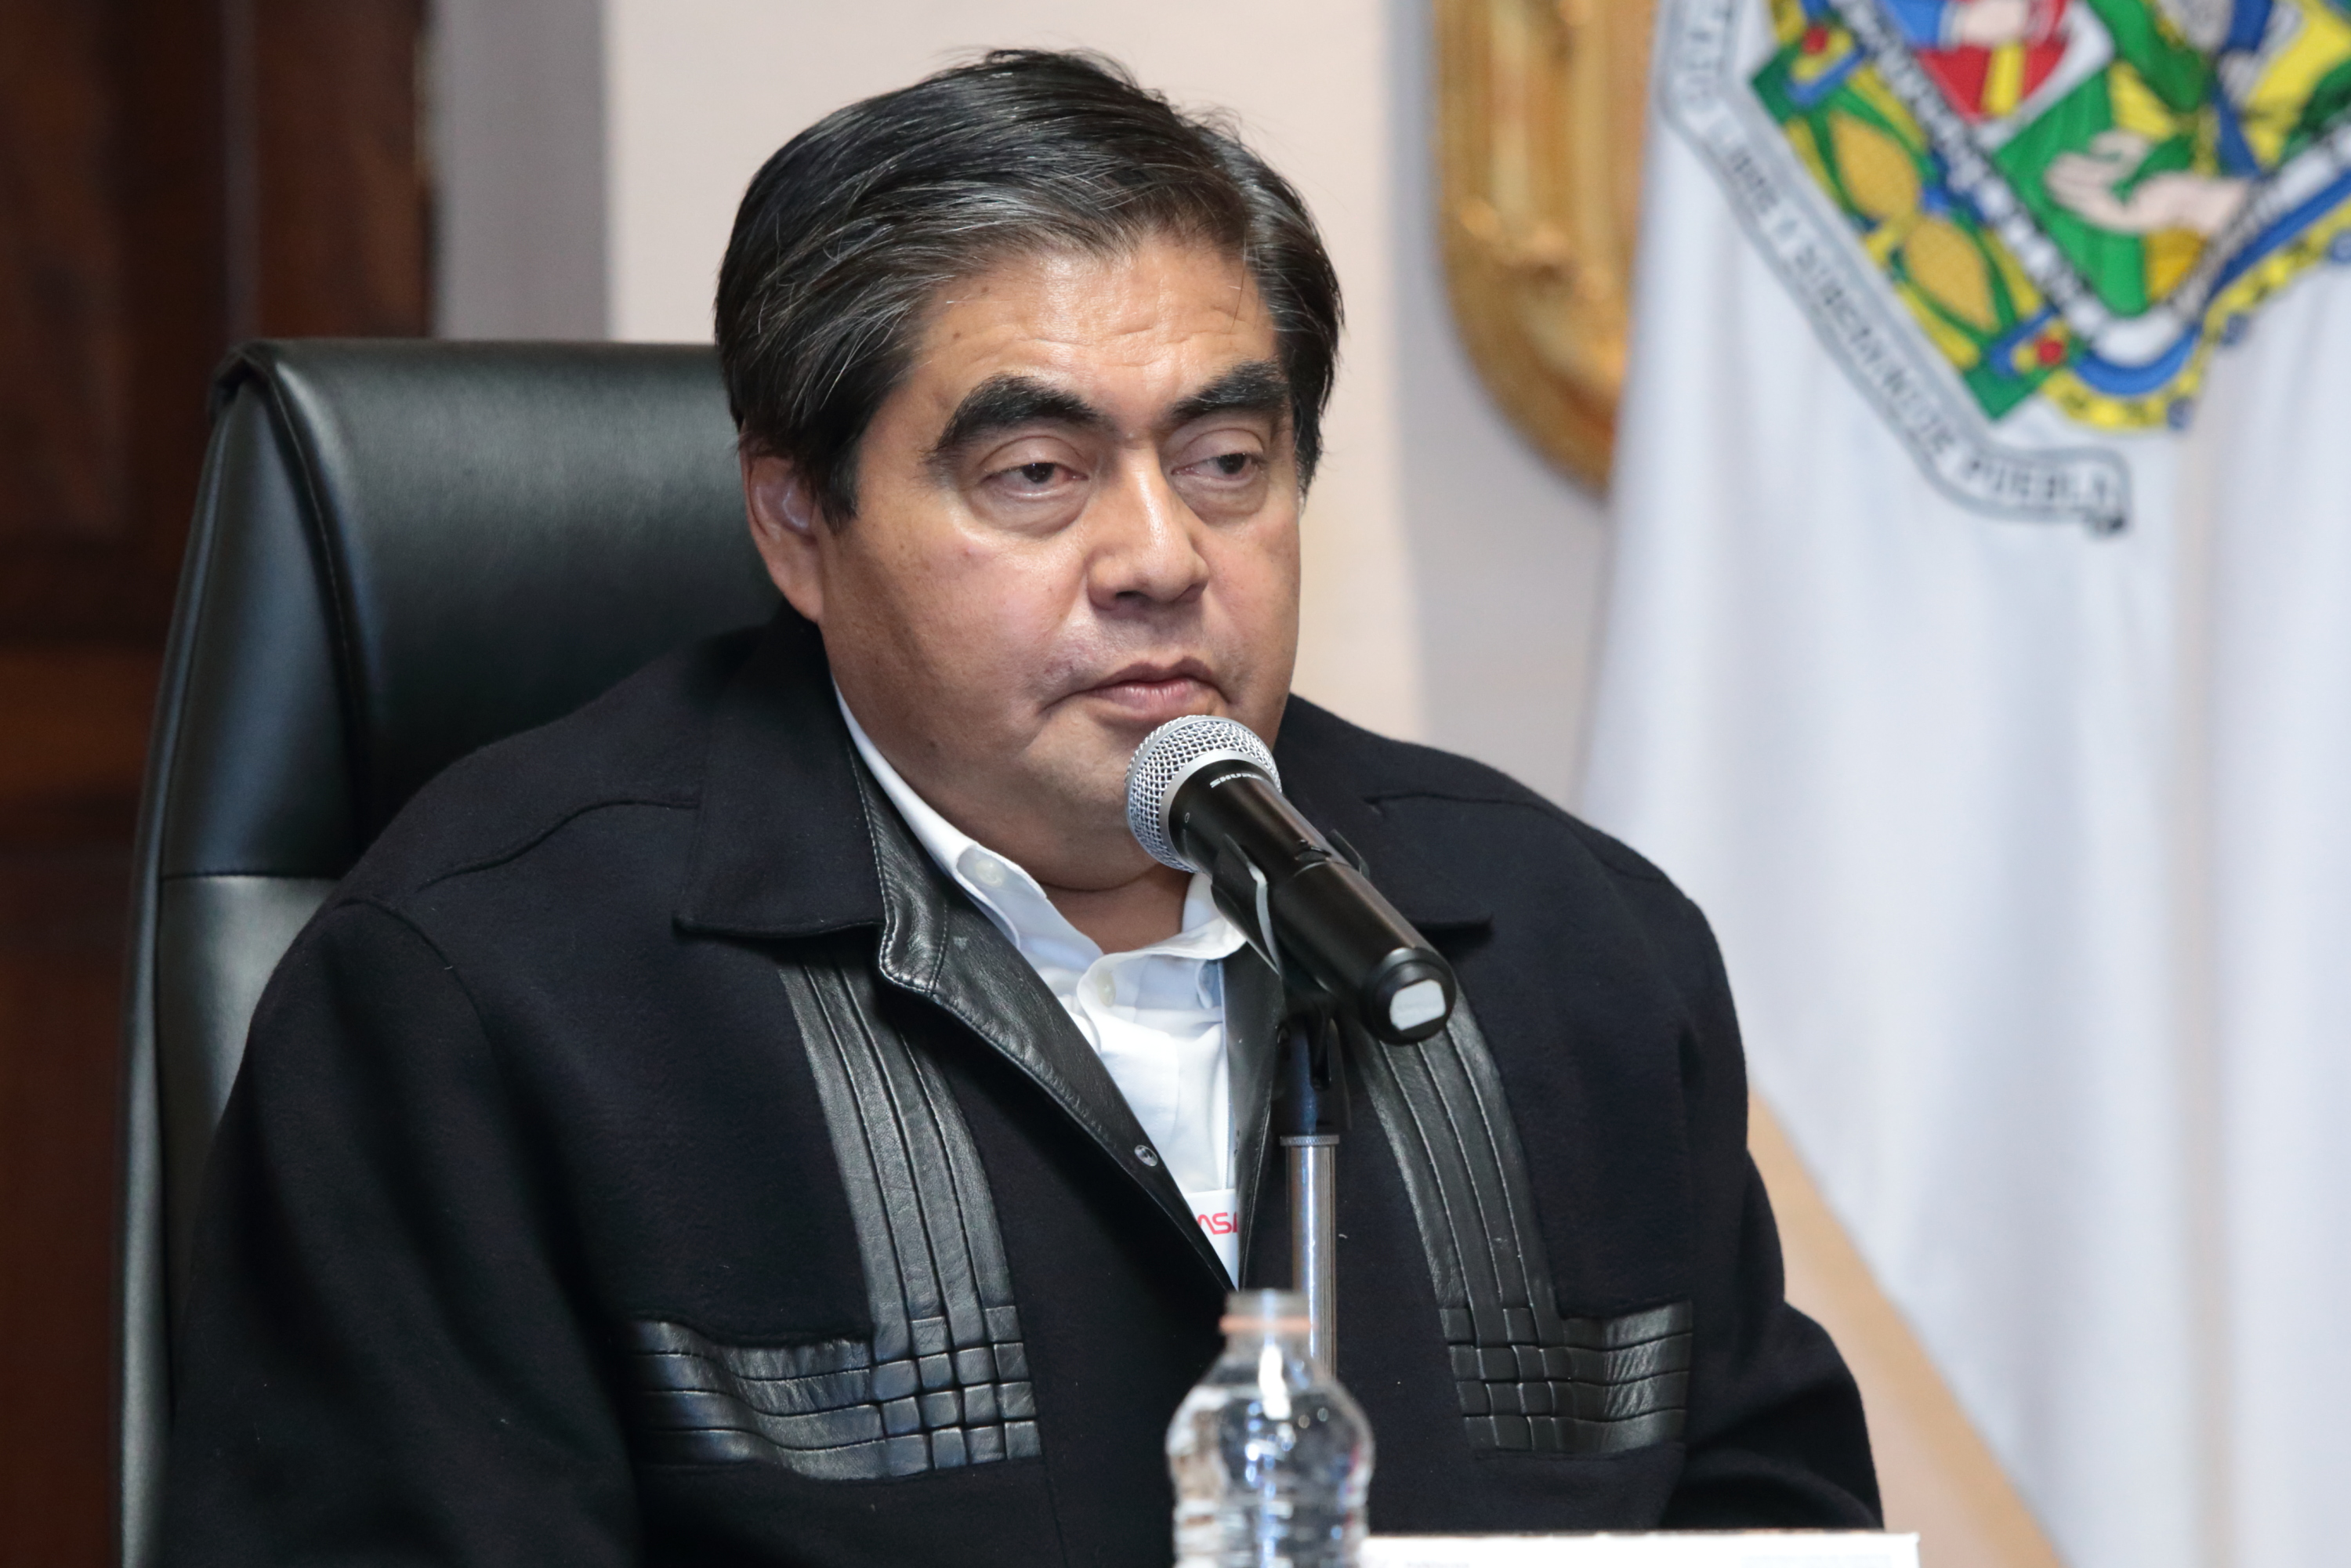 El campo es uno de los 6 polos de desarrollo en Puebla, subrayó el gobernador Miguel Barbosa